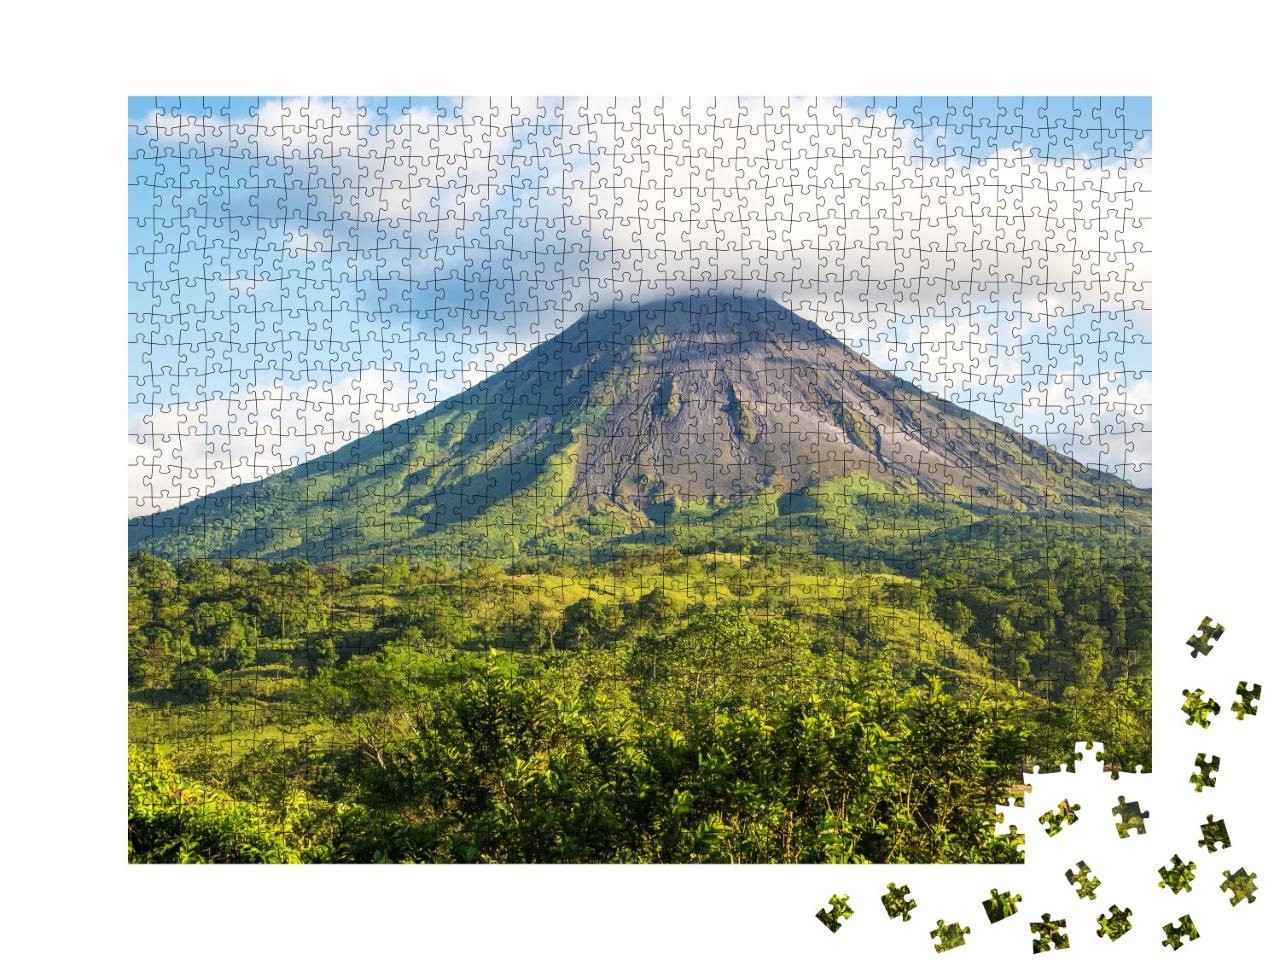 Puzzle de 1000 pièces « Impressionnant volcan Arenal au Costa Rica »